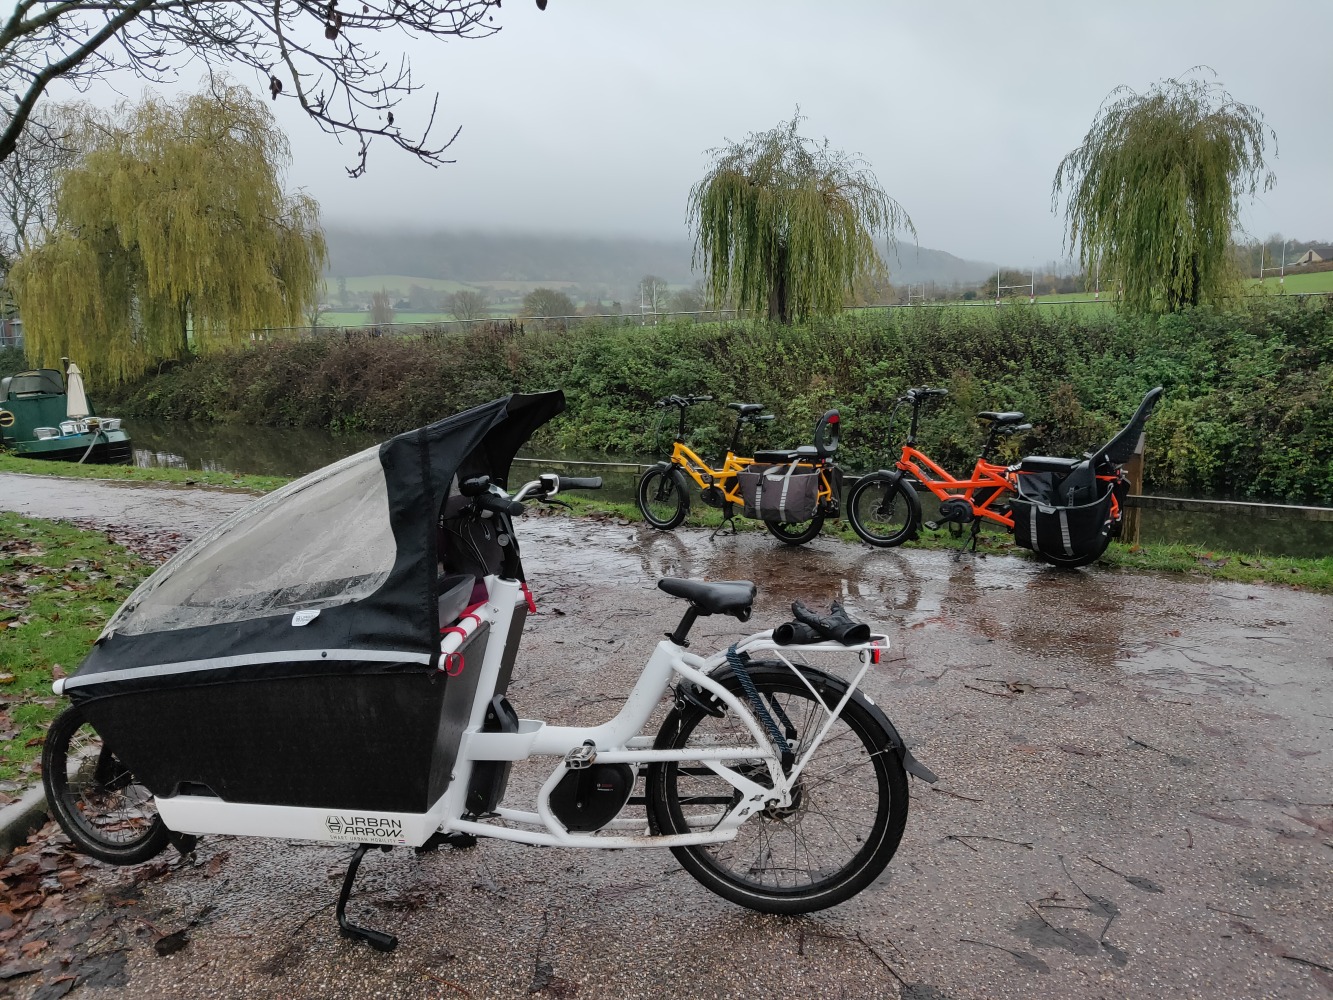 Urban Arrow cargo bike with rain canopy